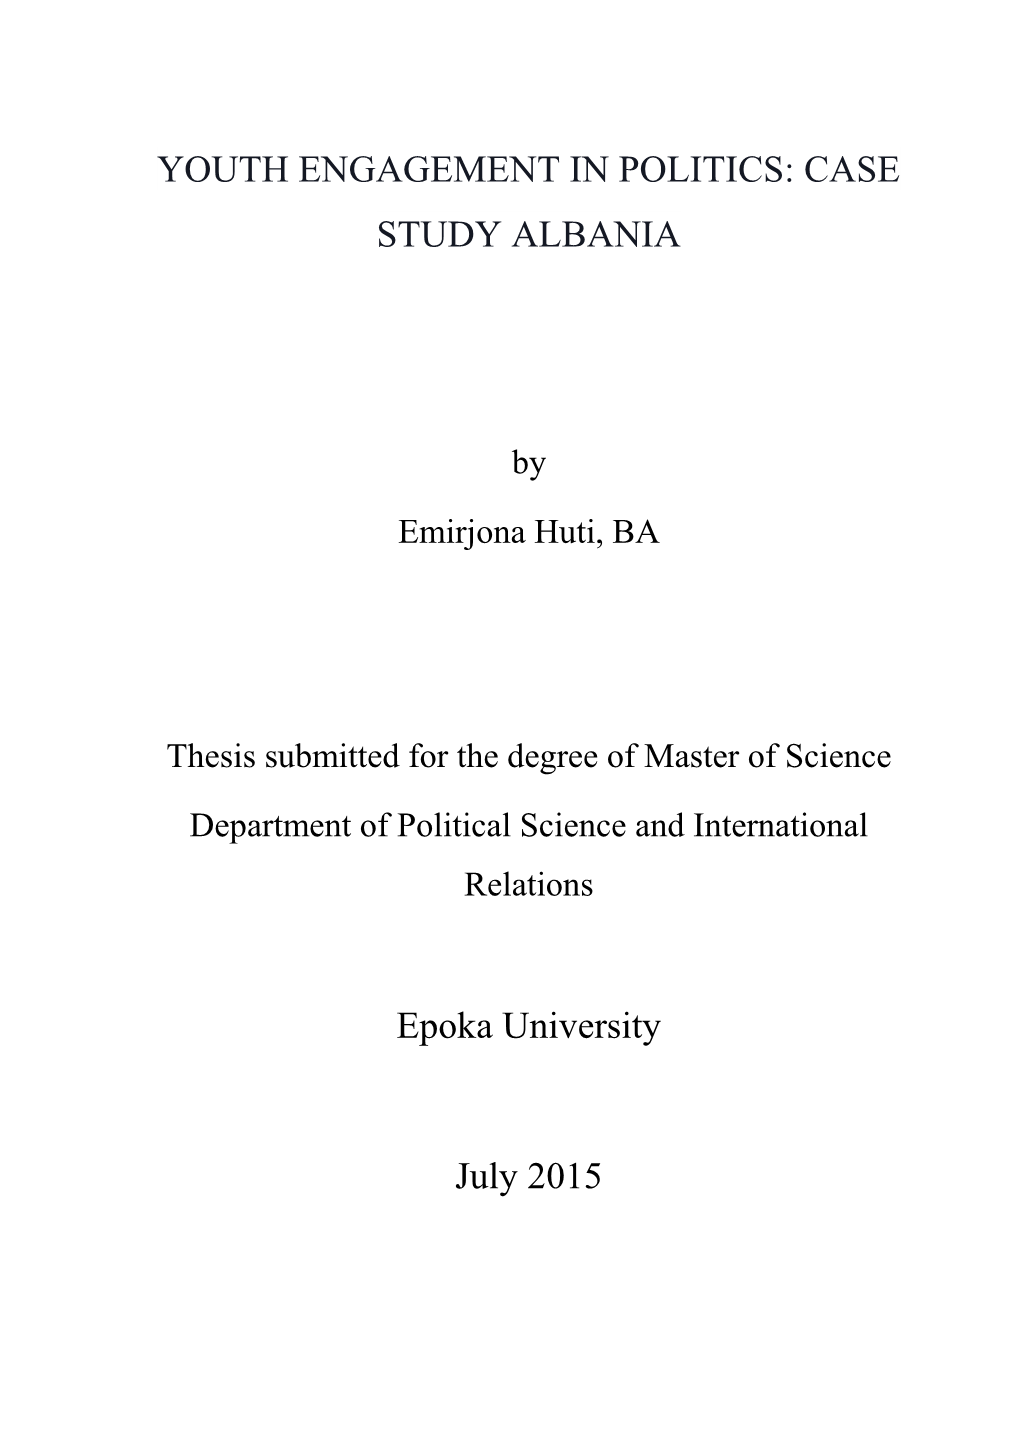 YOUTH ENGAGEMENT in POLITICS: CASE STUDY ALBANIA Epoka University July 2015